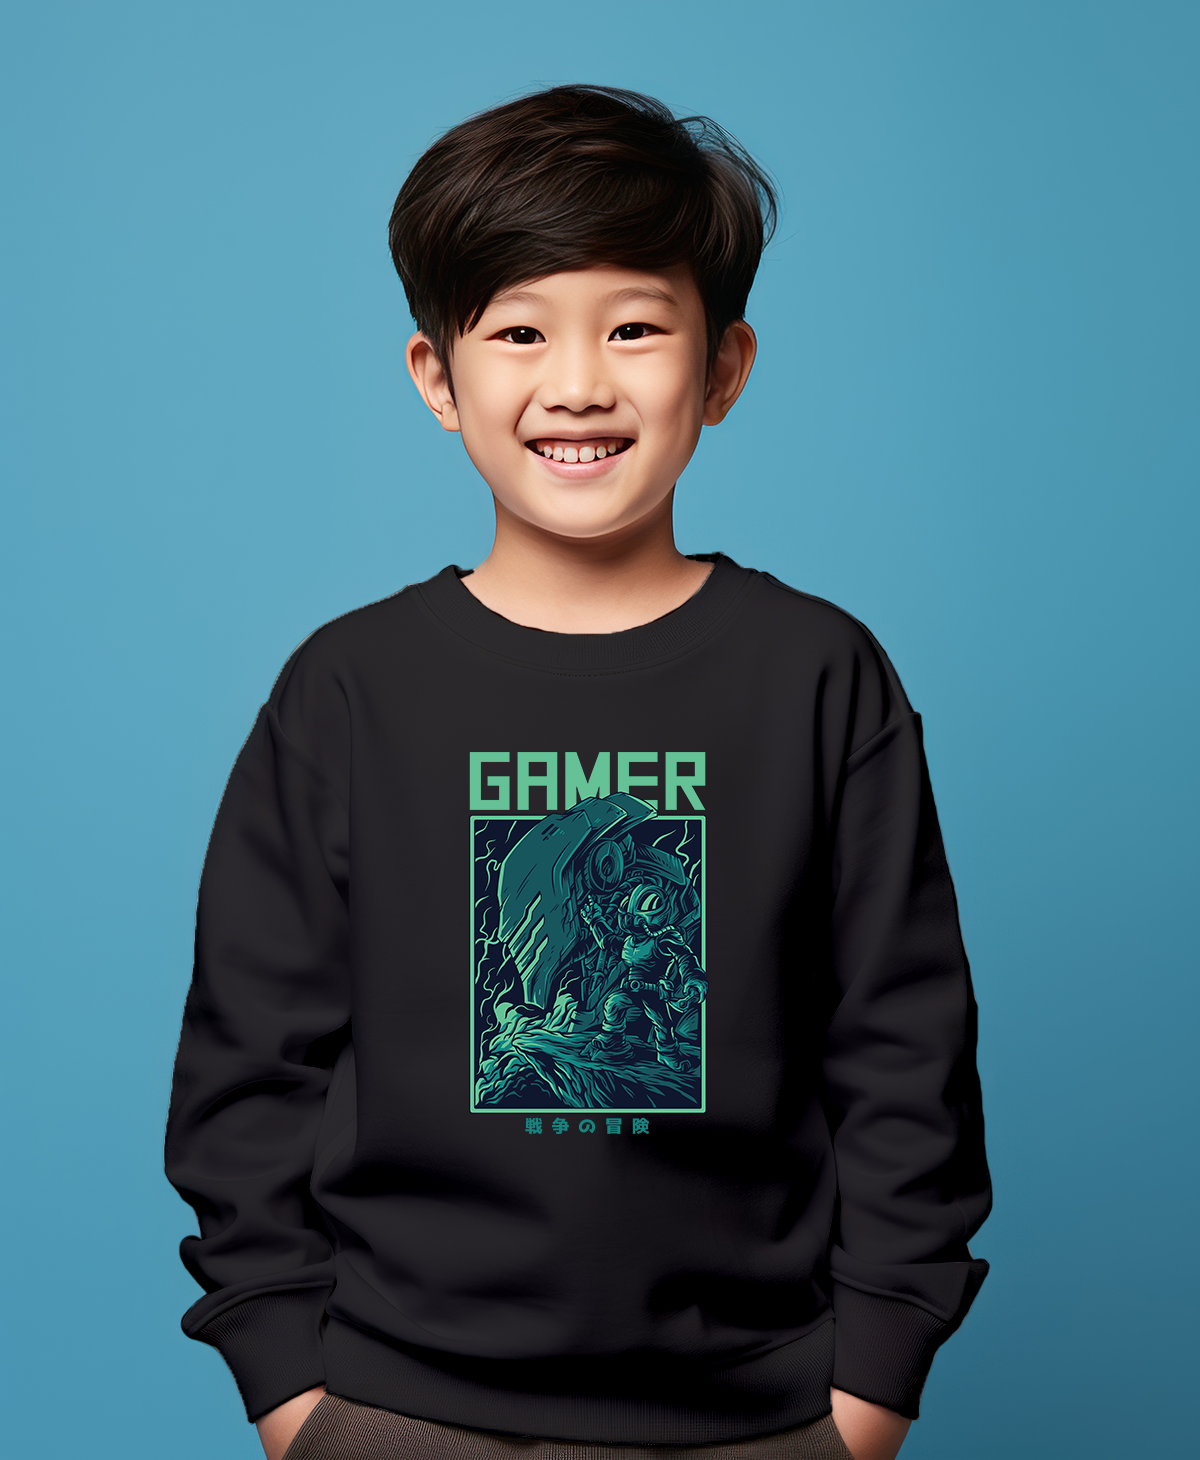 Fighter gamer black sweatshirt for boys & girls